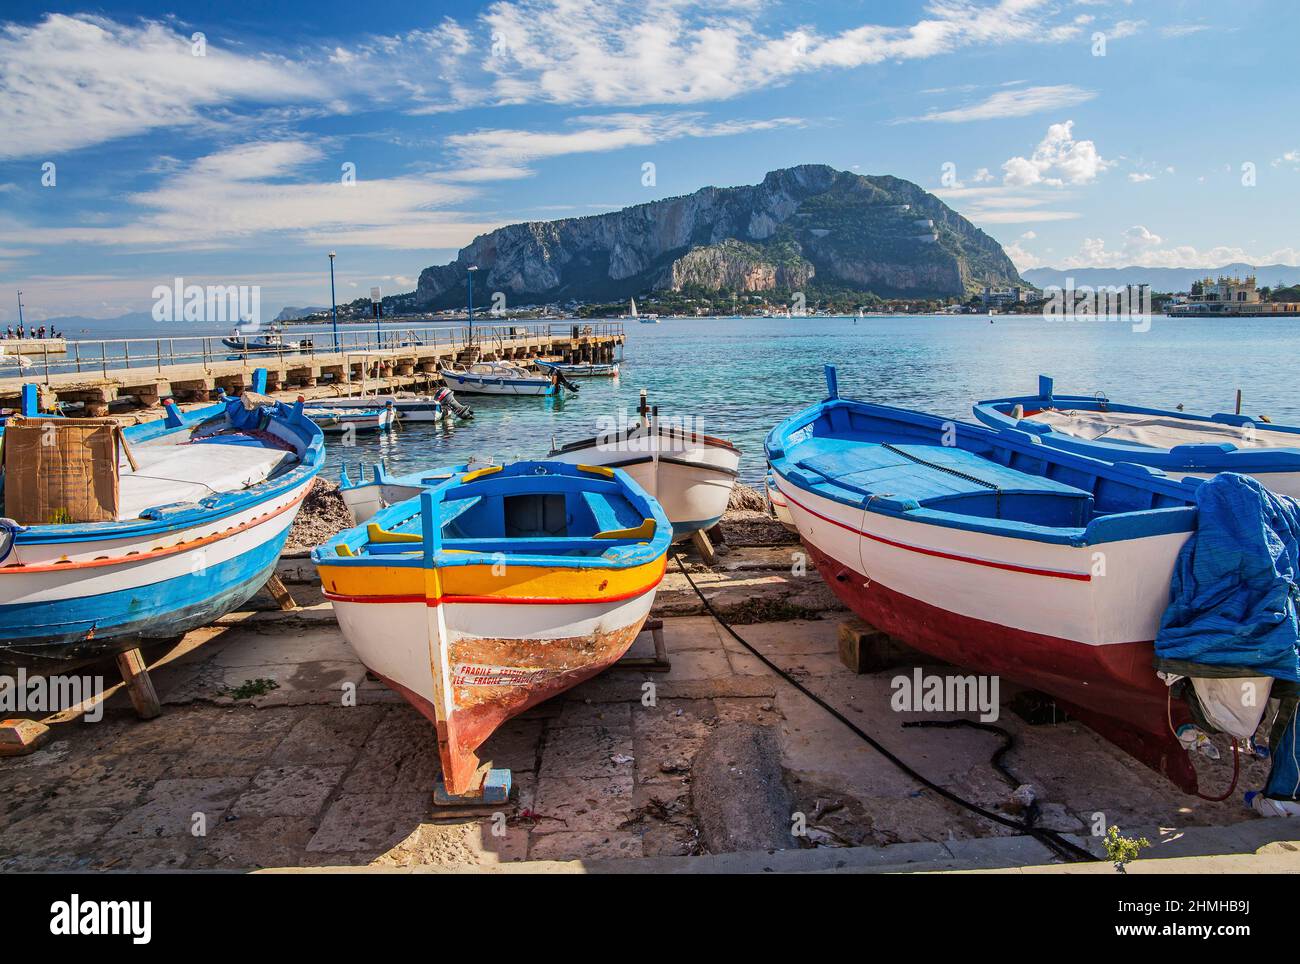 Puerto pesquero con barcos de pesca contra el Monte Pellegrino en la localidad costera de Mondello, distrito de Palermo, Sicilia, Italia Foto de stock